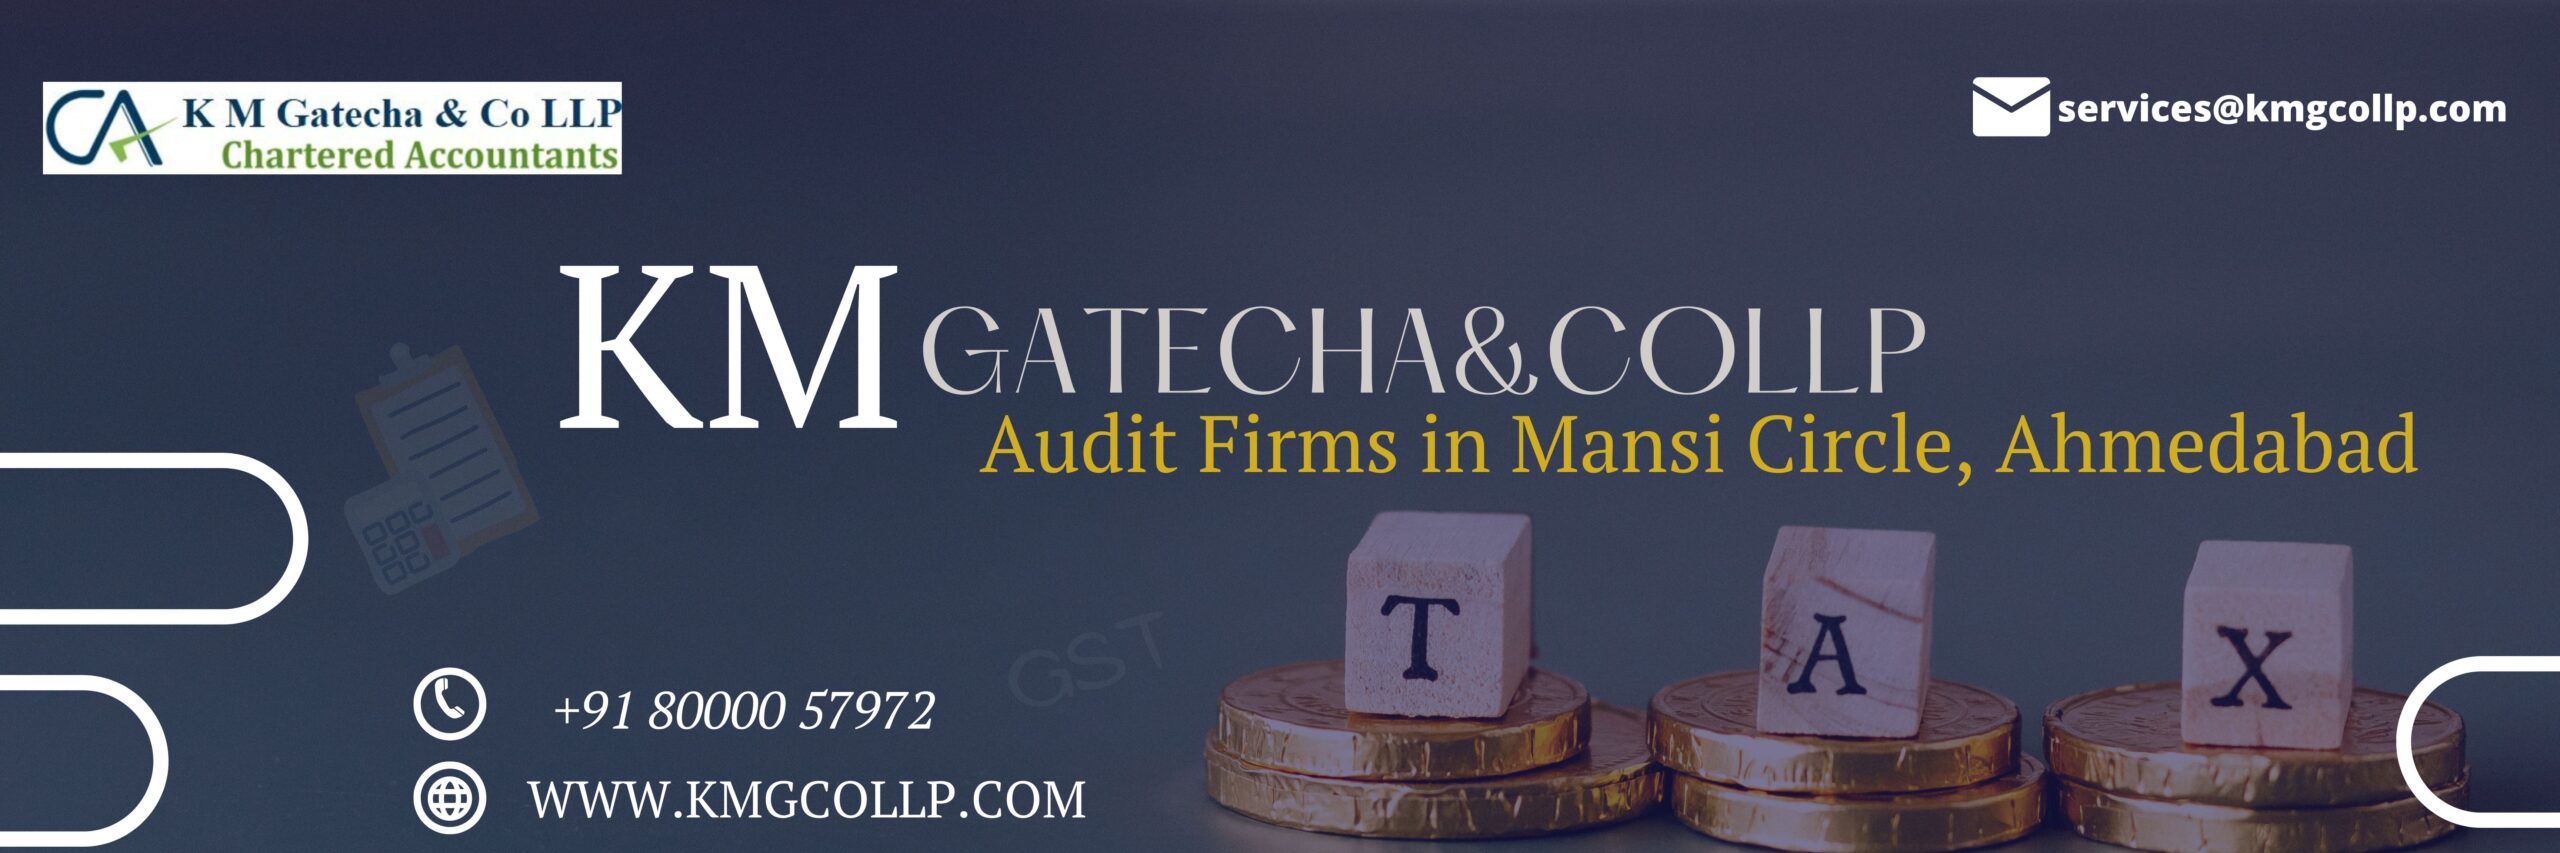 Audit Firms in Mansi Circle, Ahmedabad